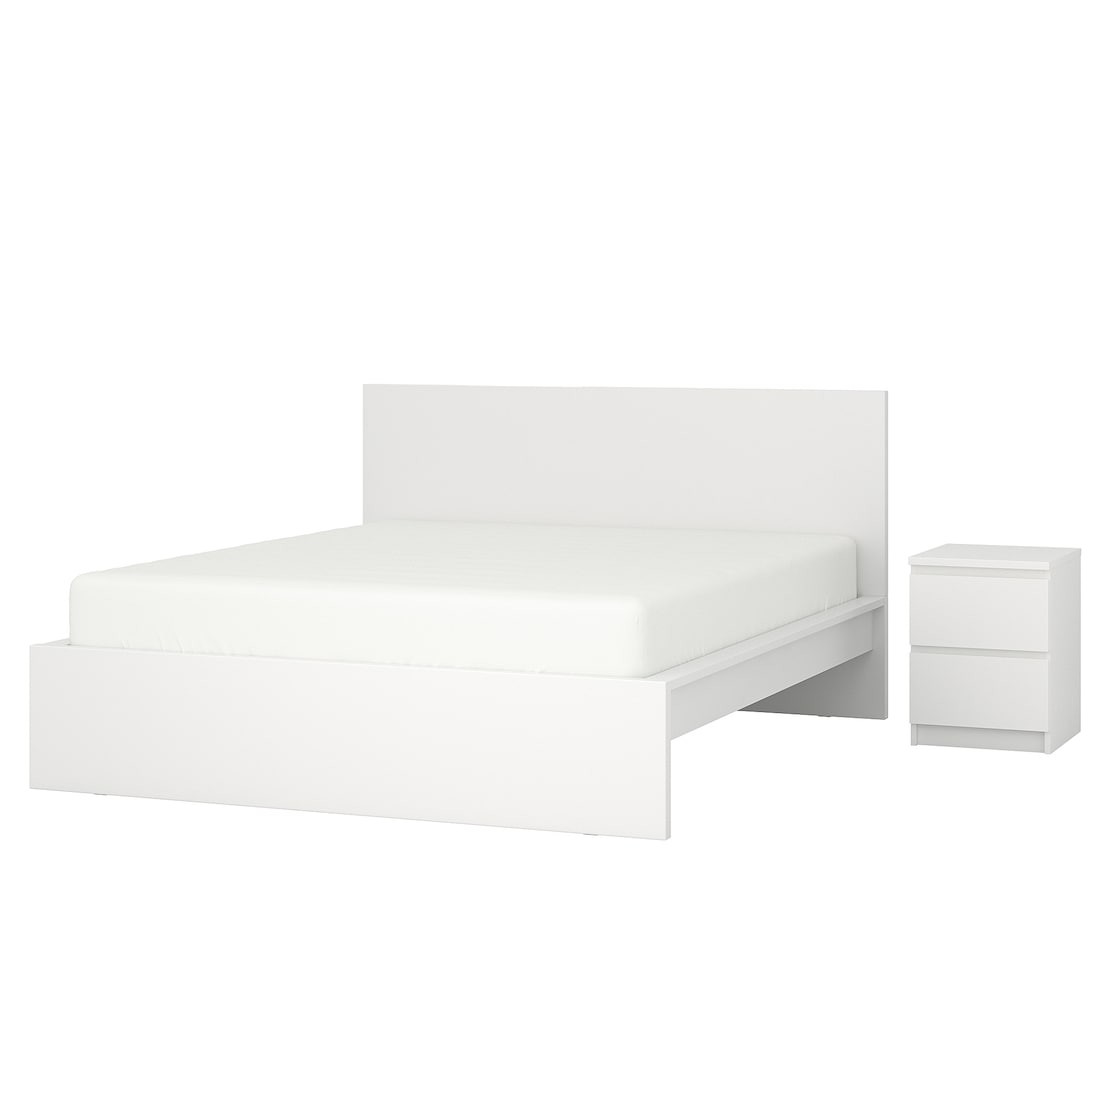 MALM МАЛЬМ Меблі для спальні, комплект 2 шт., білий, 160x200 см